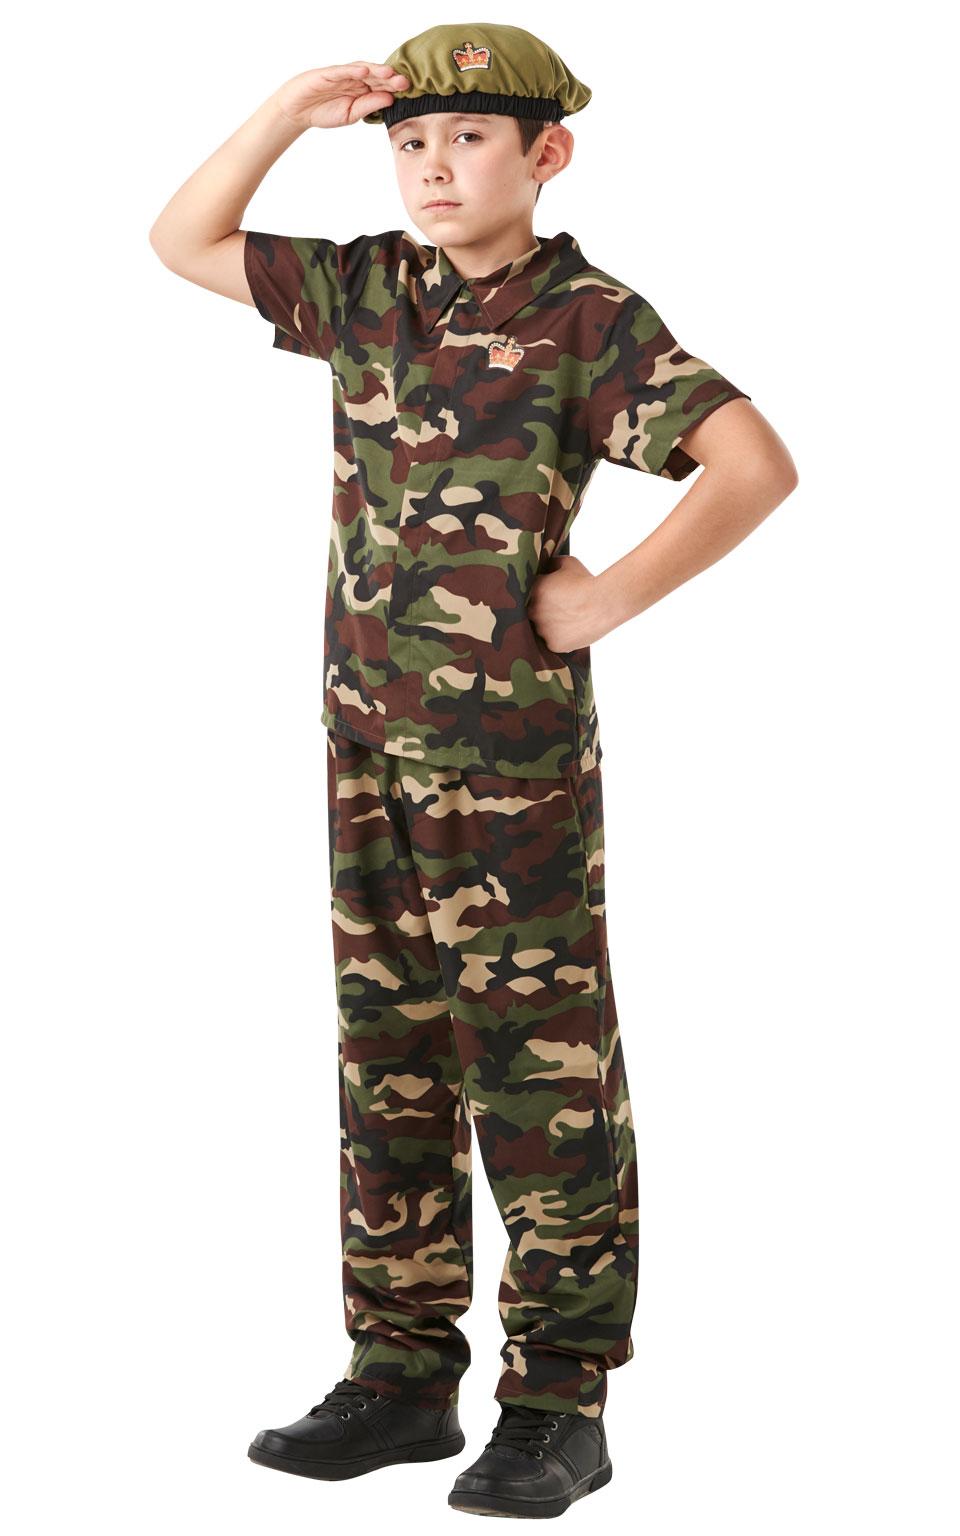 Kids British Soldier Costume